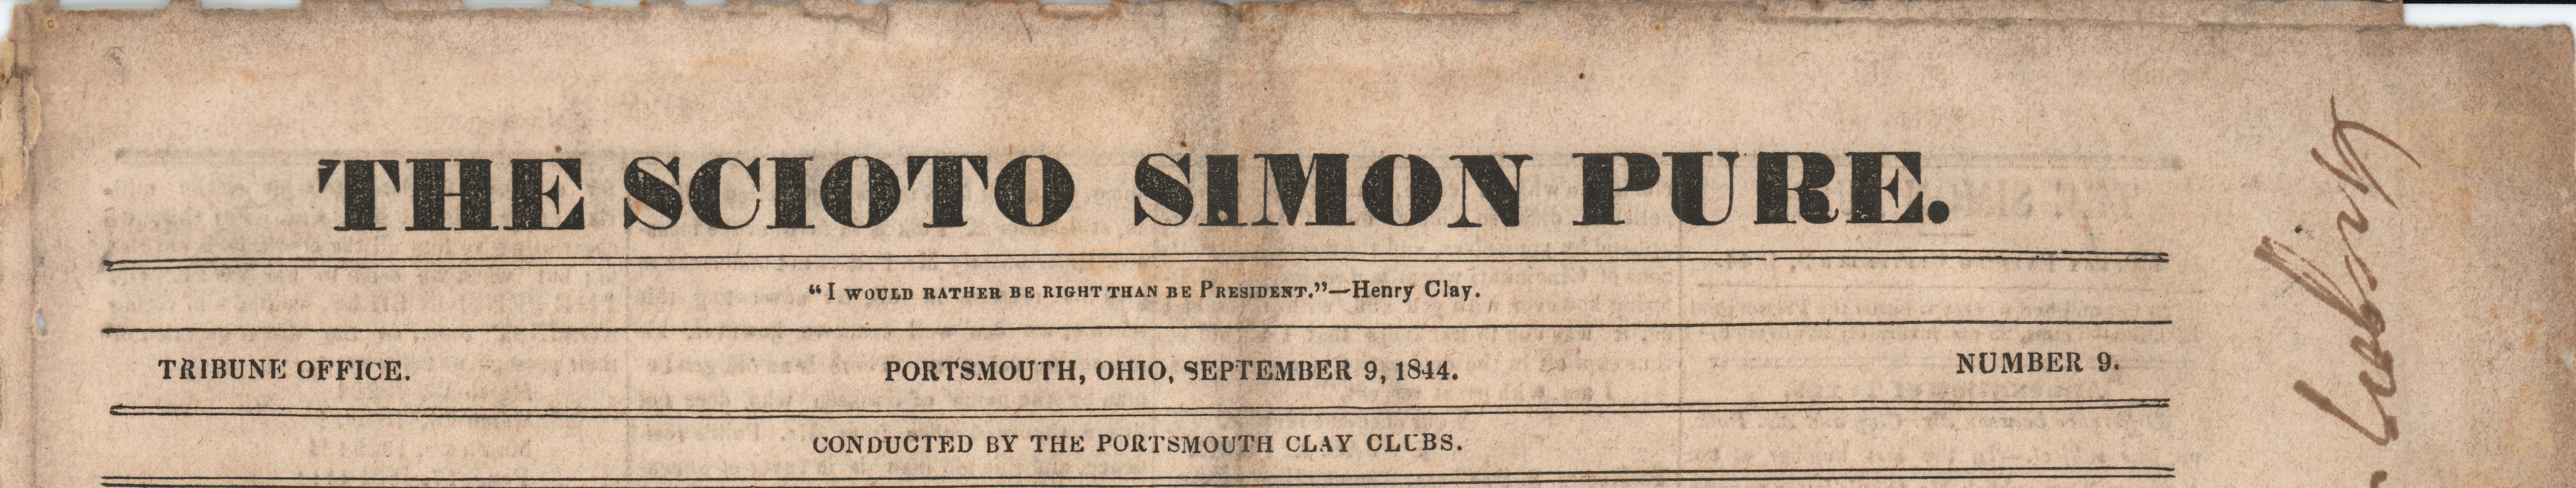 Scioto Simon Pure (Portsmouth, Ohio), 1844